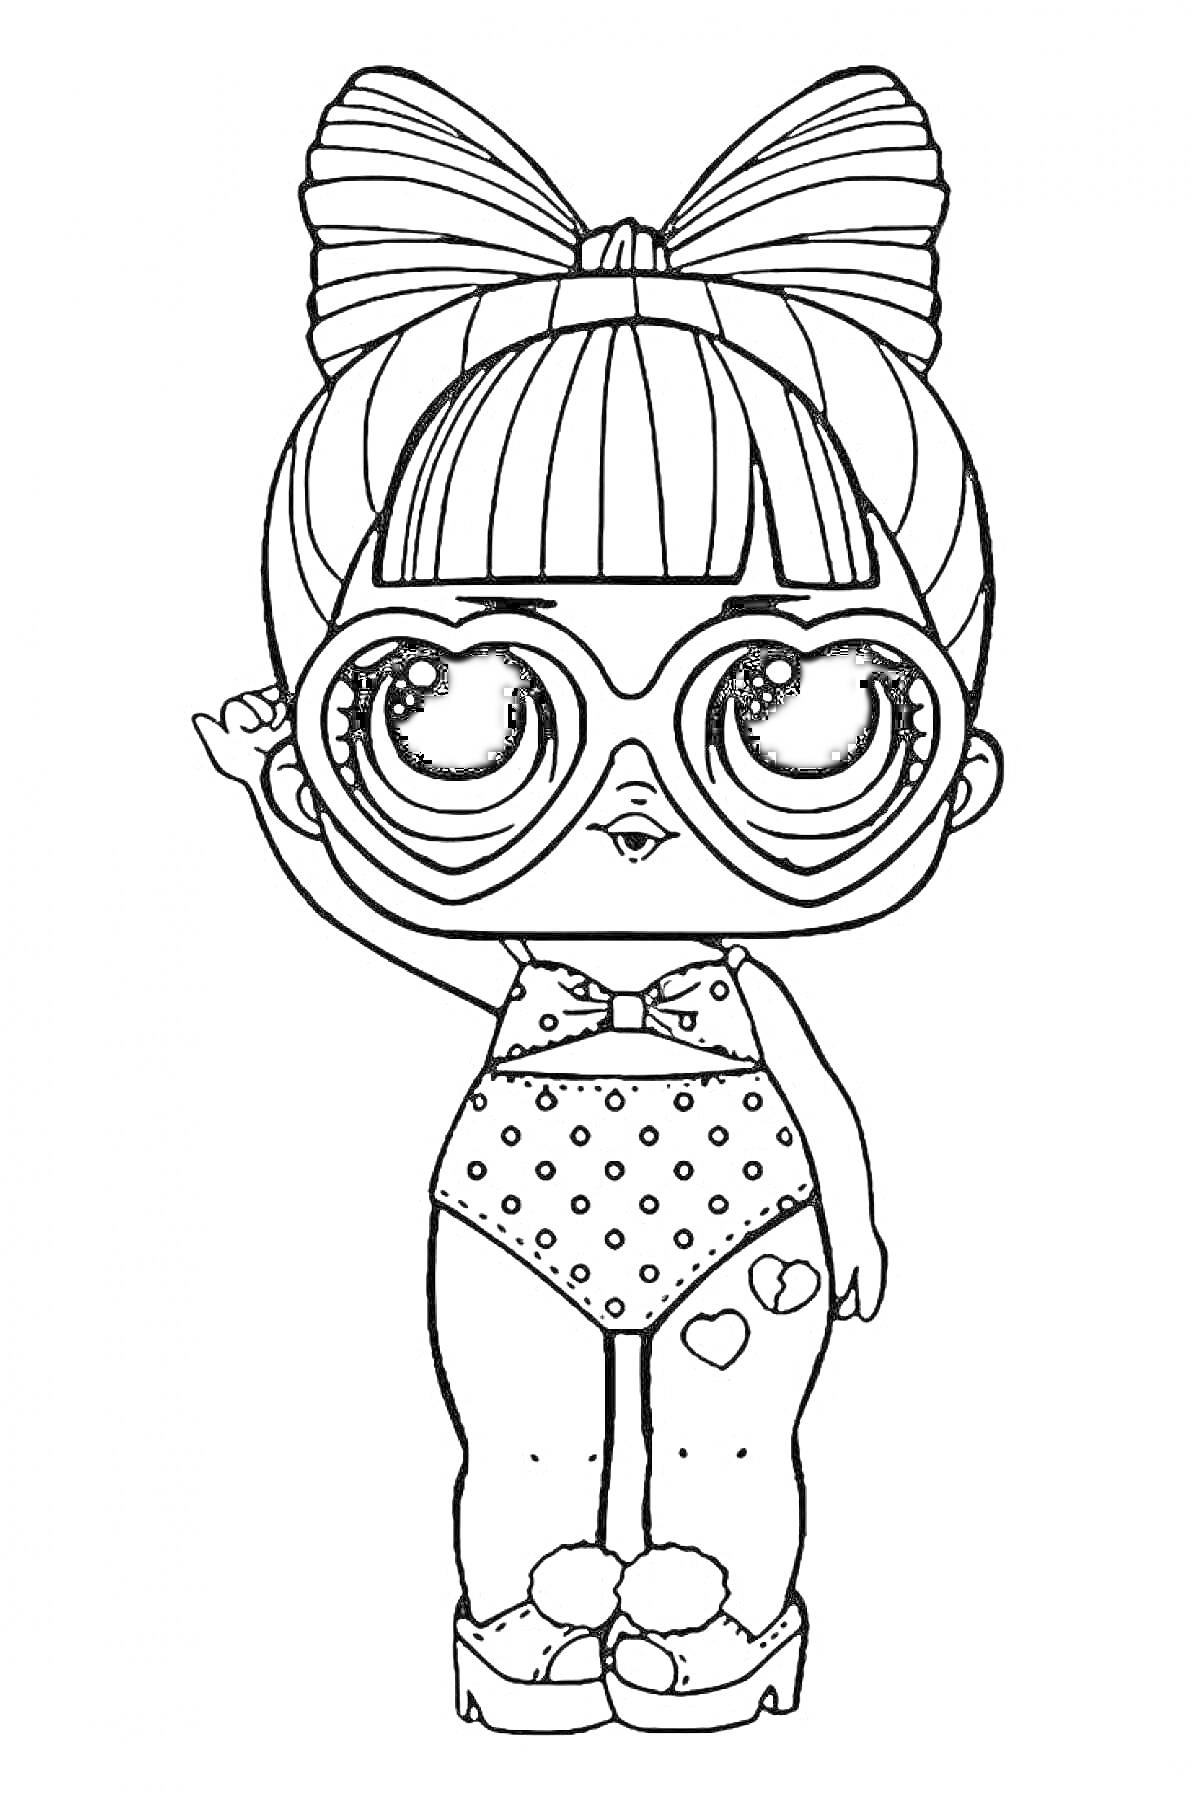 Раскраска Девочка ЛОЛ в очках-сердечках и купальнике с точками, с бантиком на волосах, в тапочках и с сердечками на левом бедре